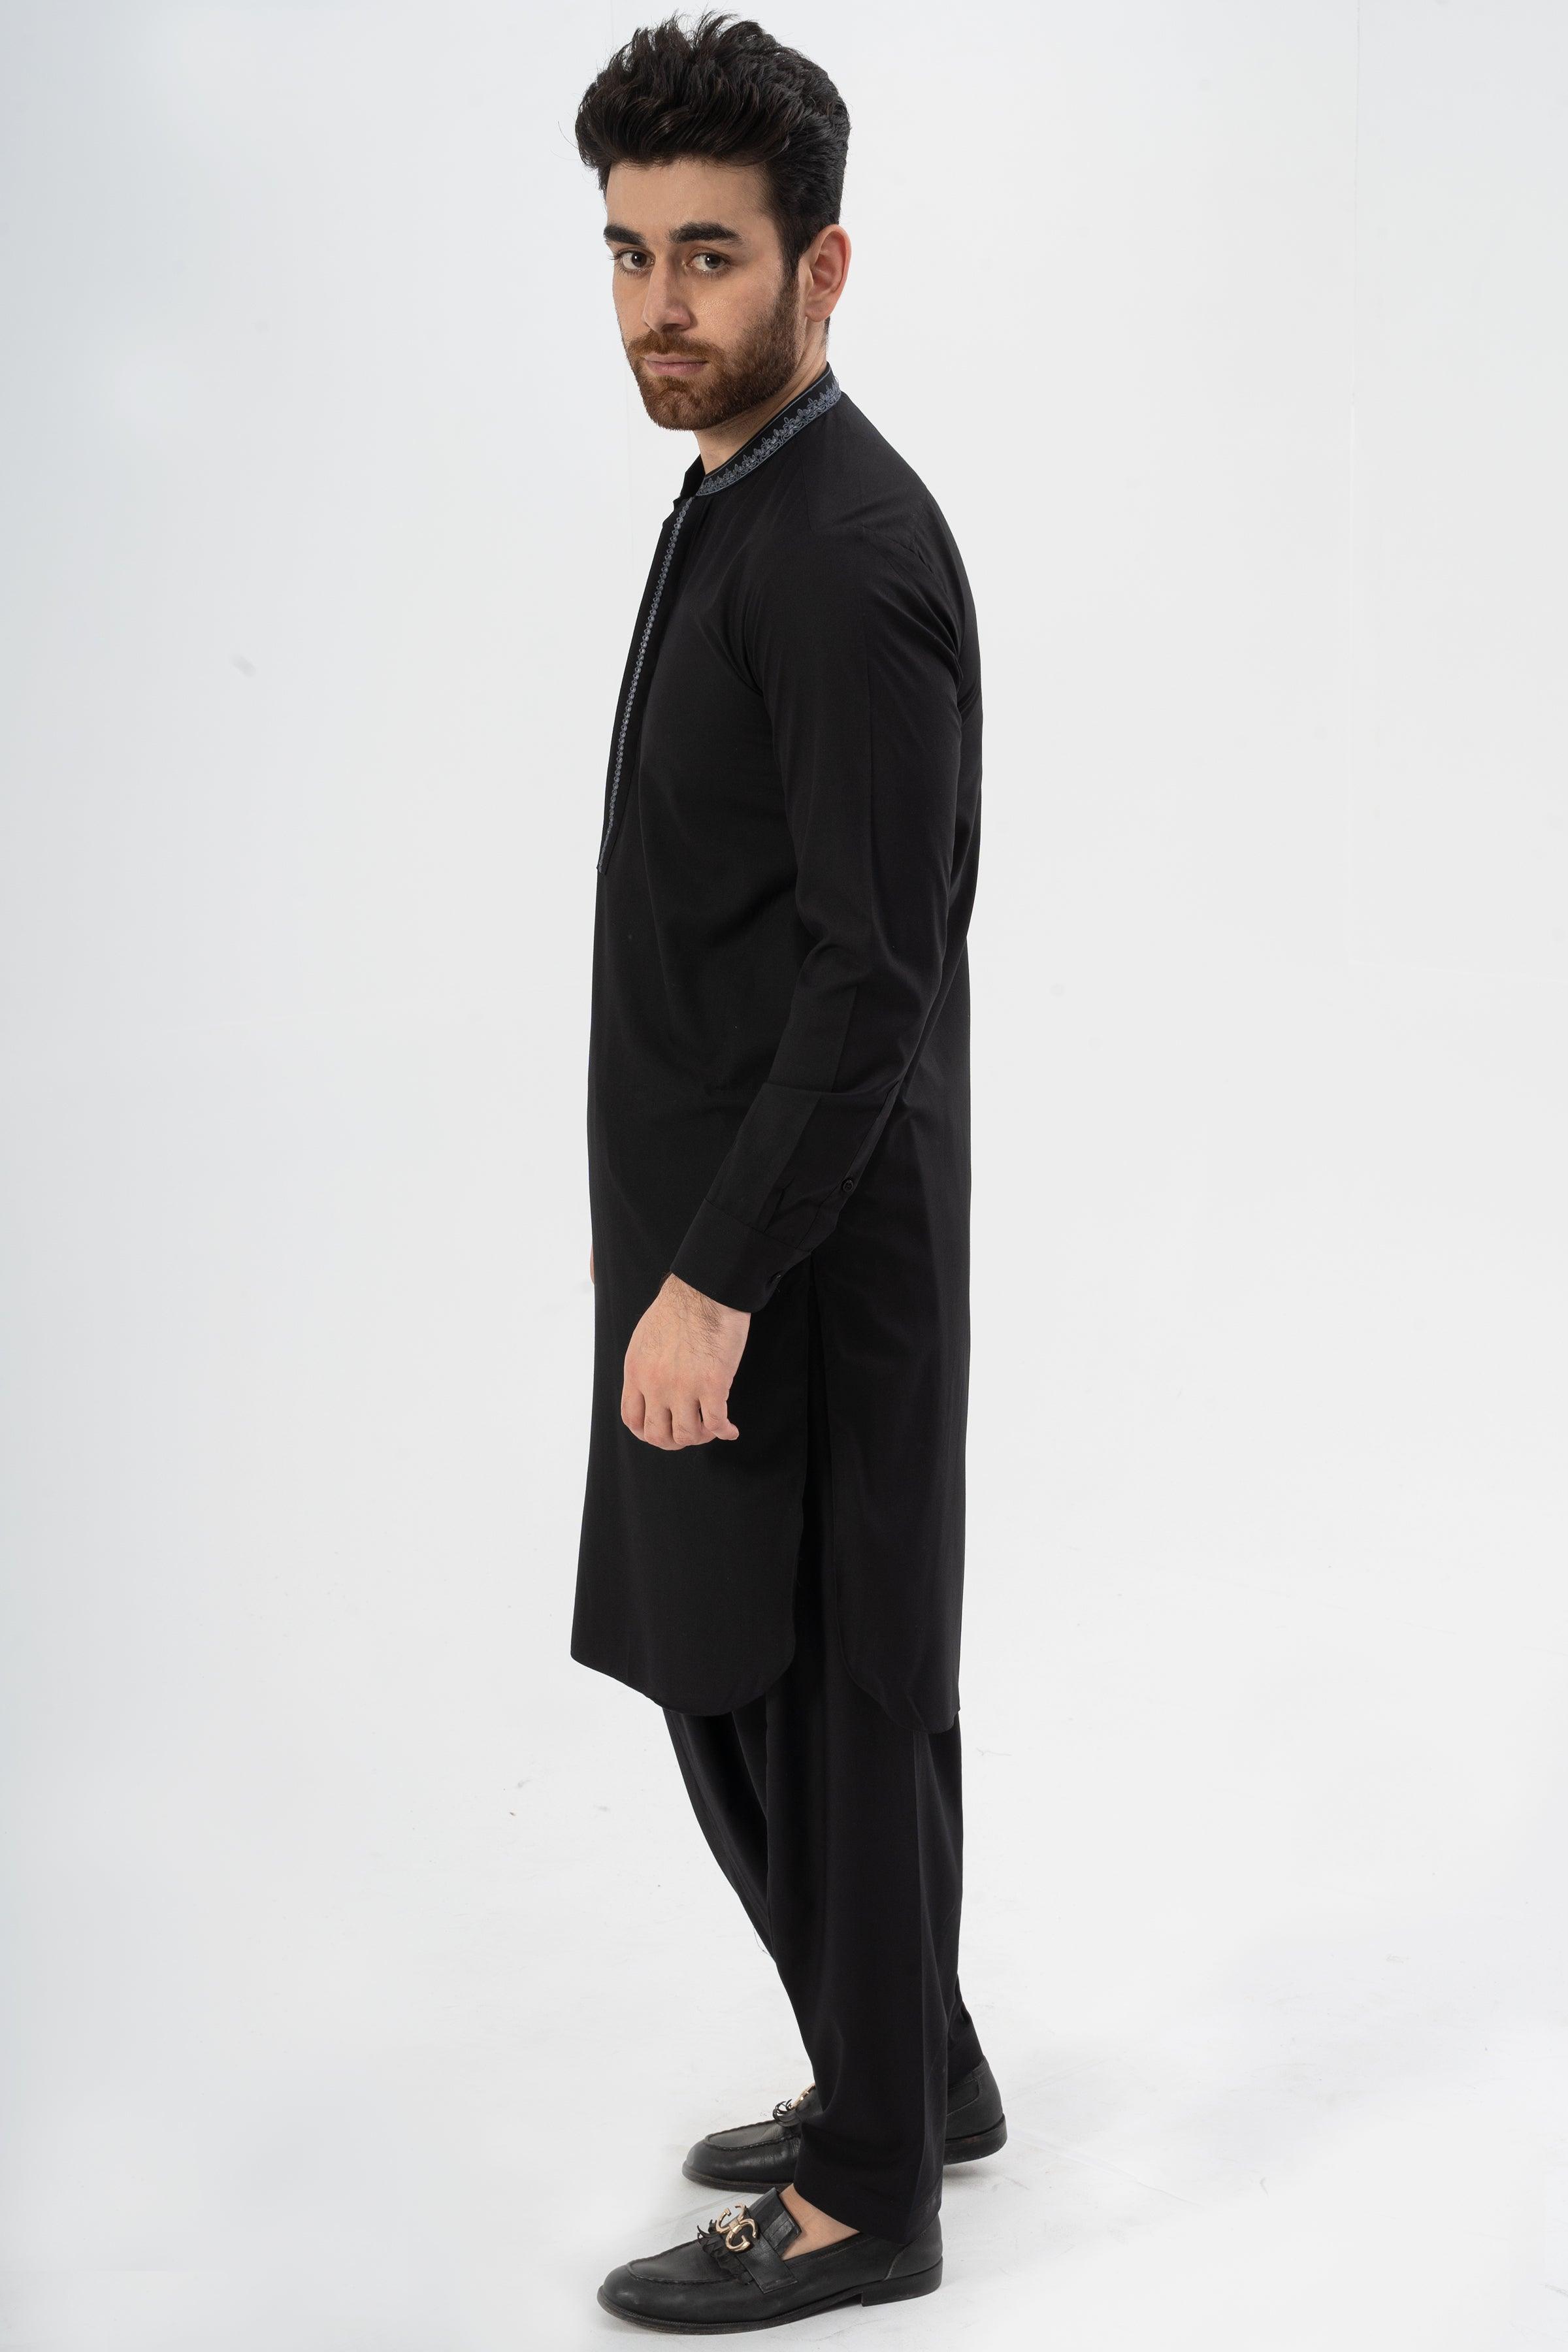 EMBROIDERED SHALWAR KAMEEZ BLACK at Charcoal Clothing